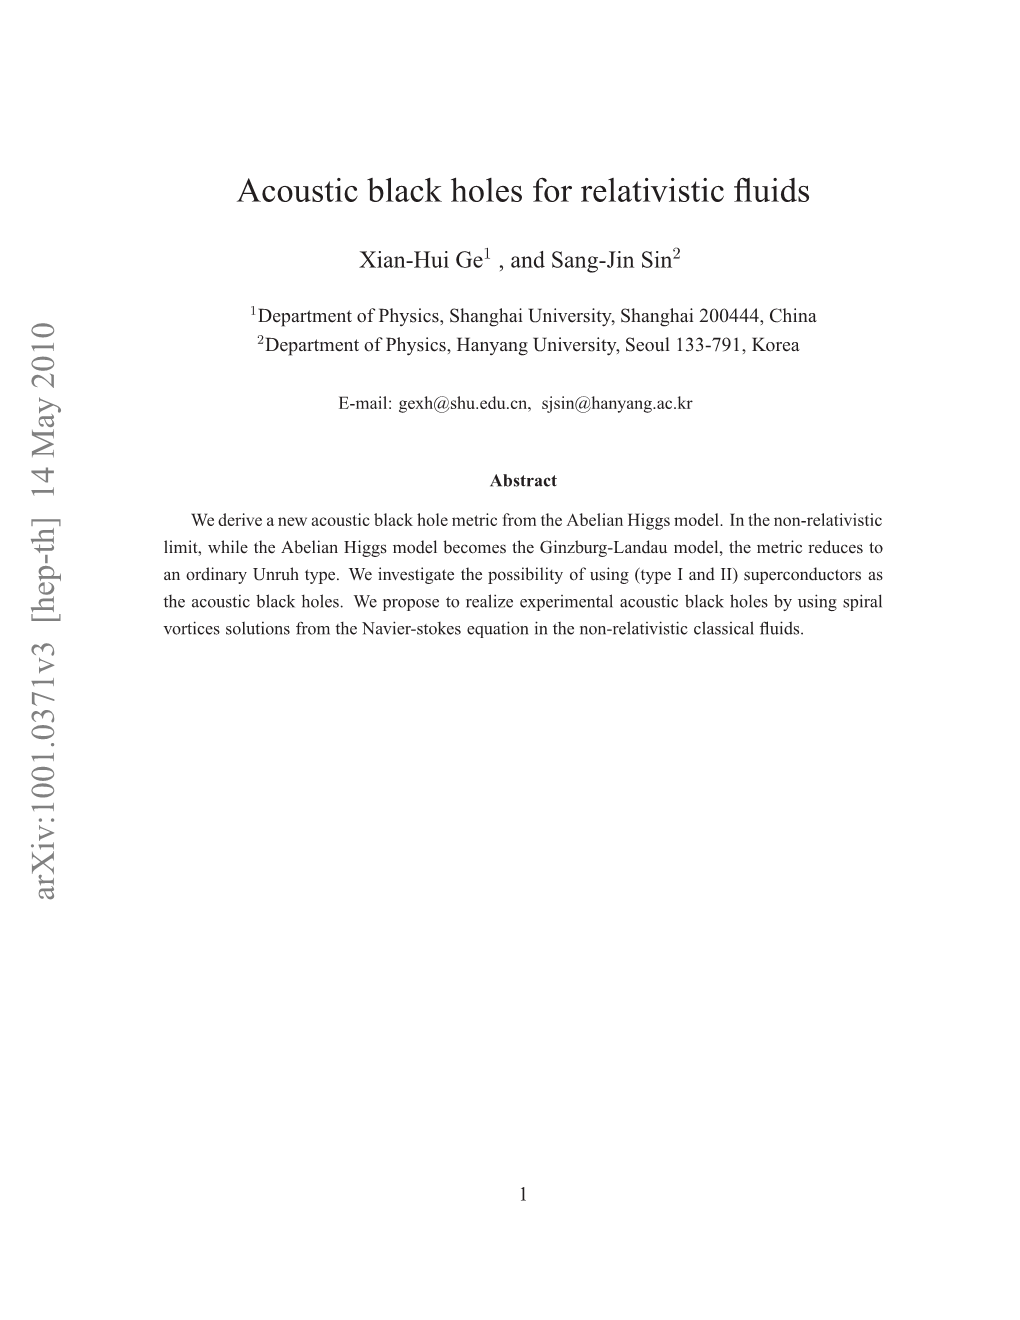 Acoustic Black Holes for Relativistic Fluids